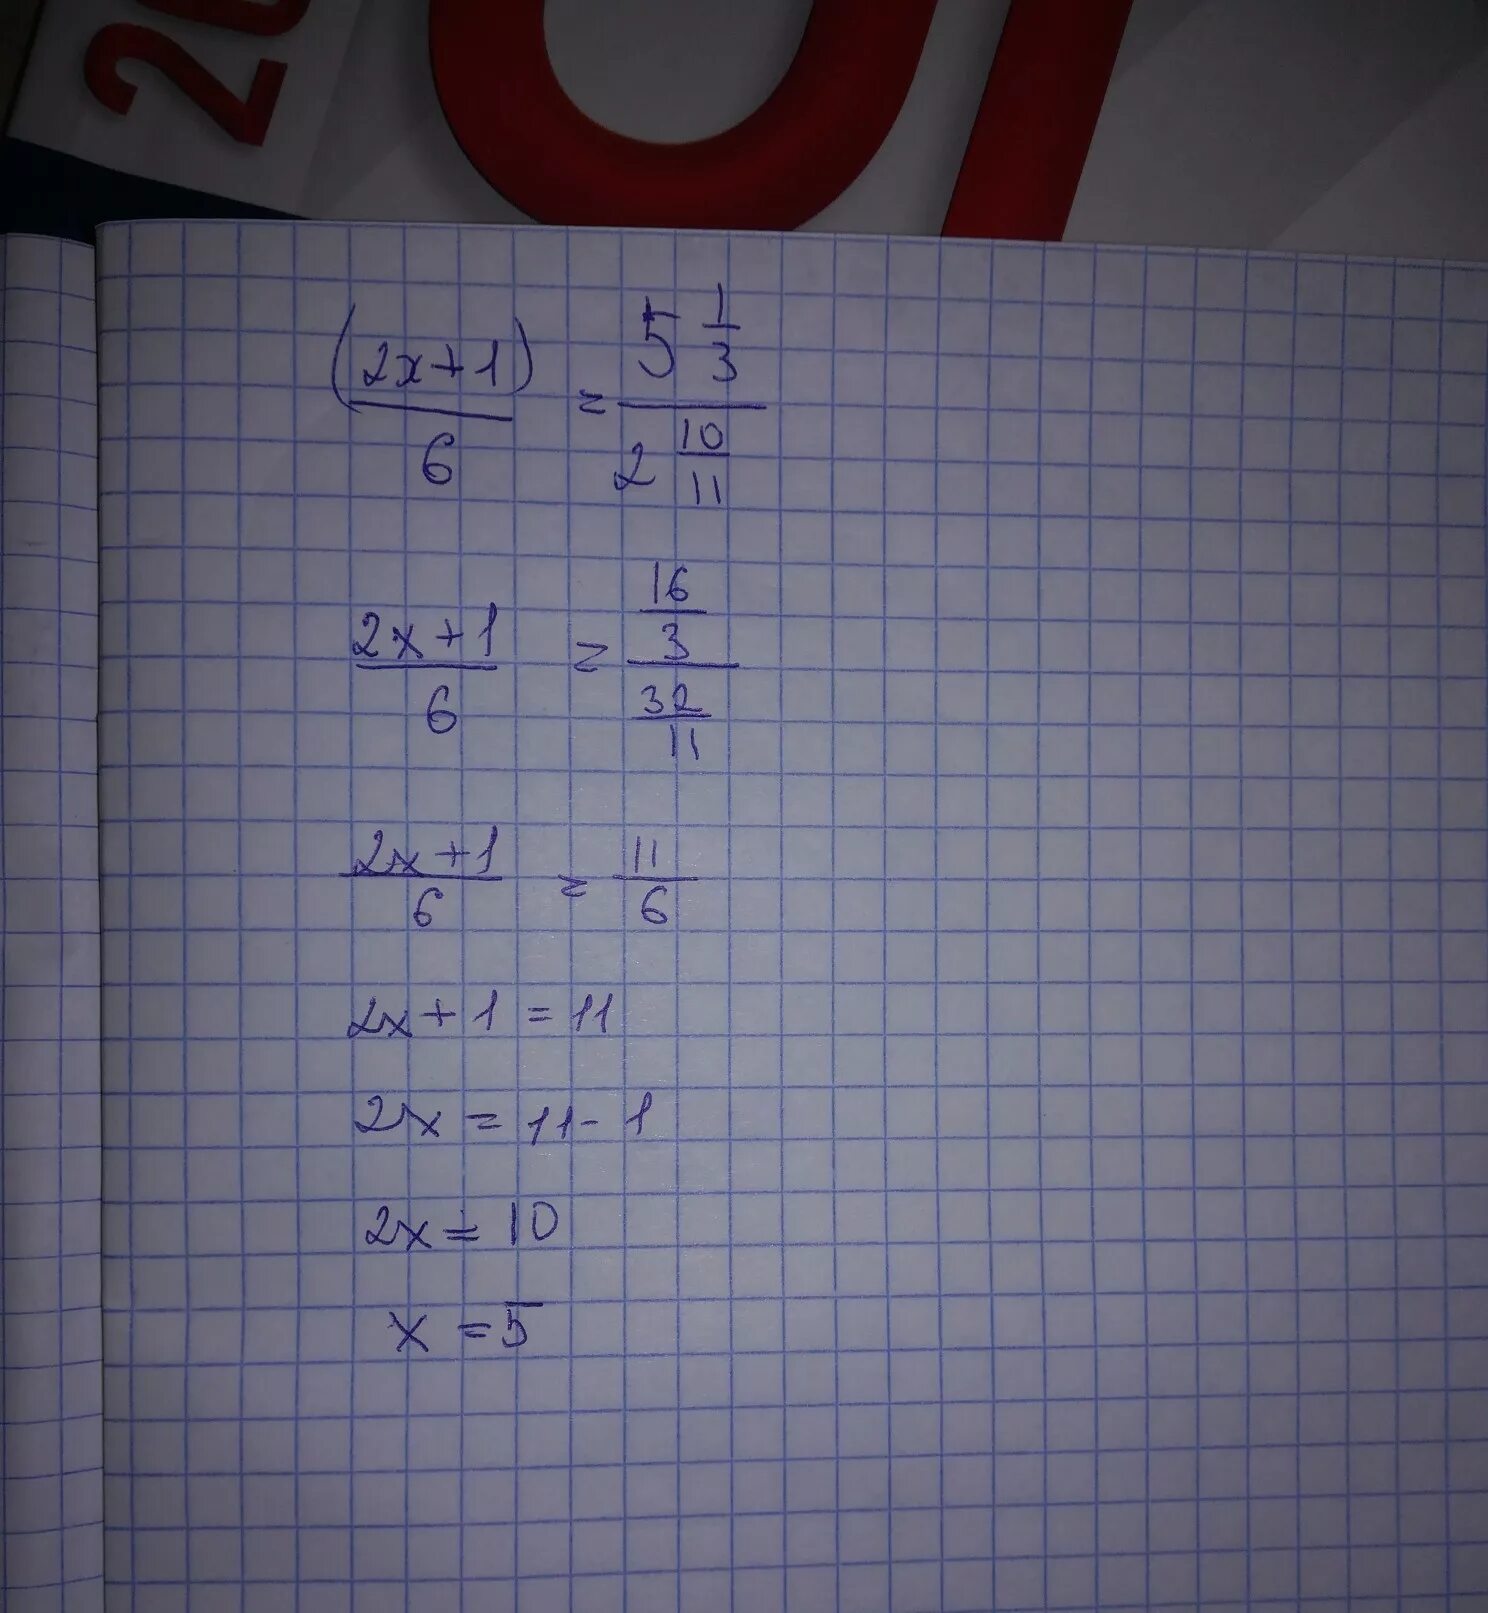 2х 3 9 10. 0,5:6=1 1/6:Х. (Х-1):2-(У-1):6=5/3. Х-5,1=6,2. Решить 1,2*5,5.